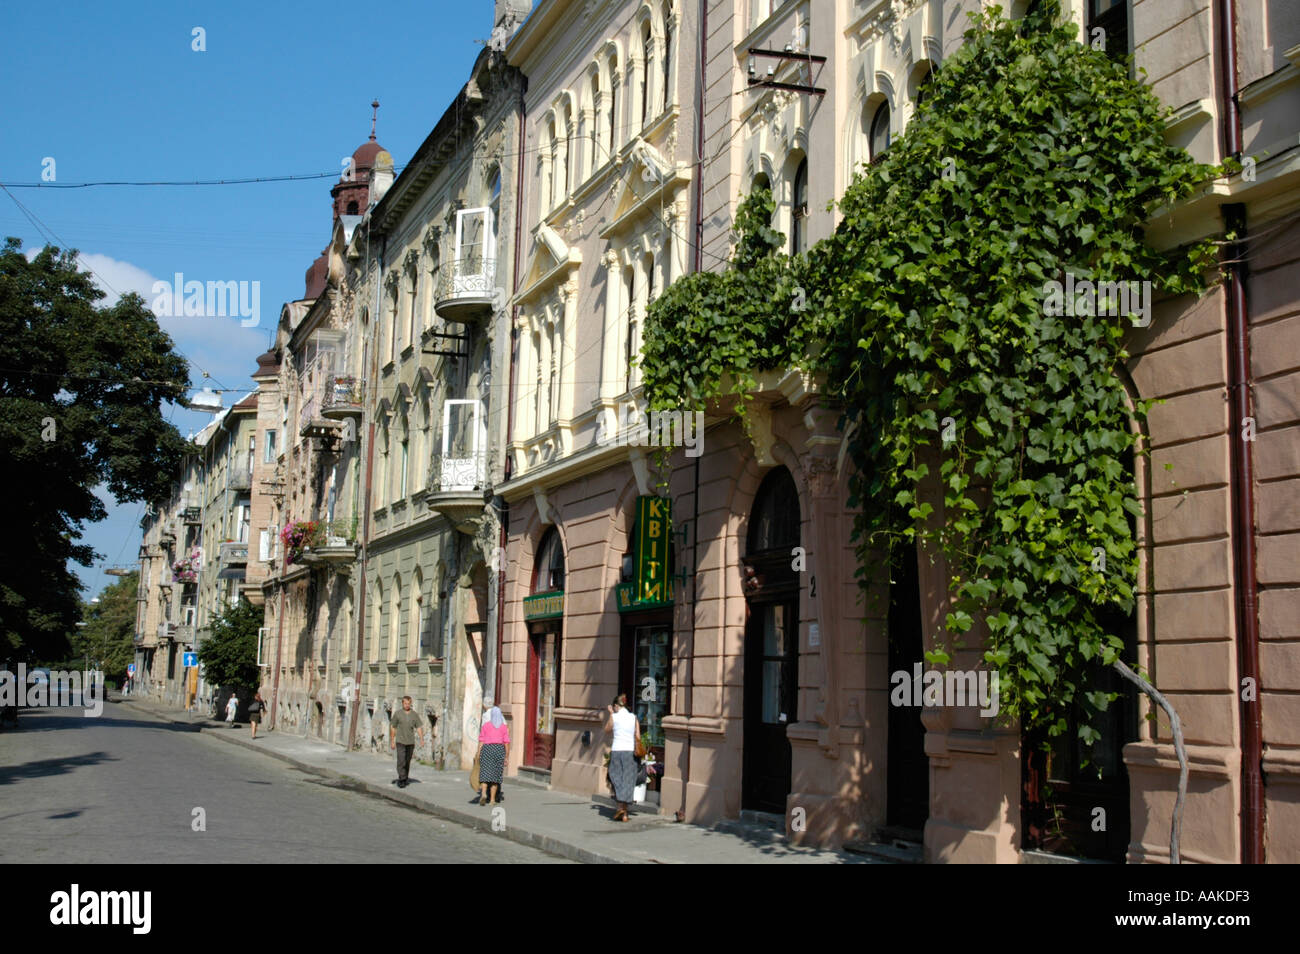 Cernivci, green house facade Stock Photo